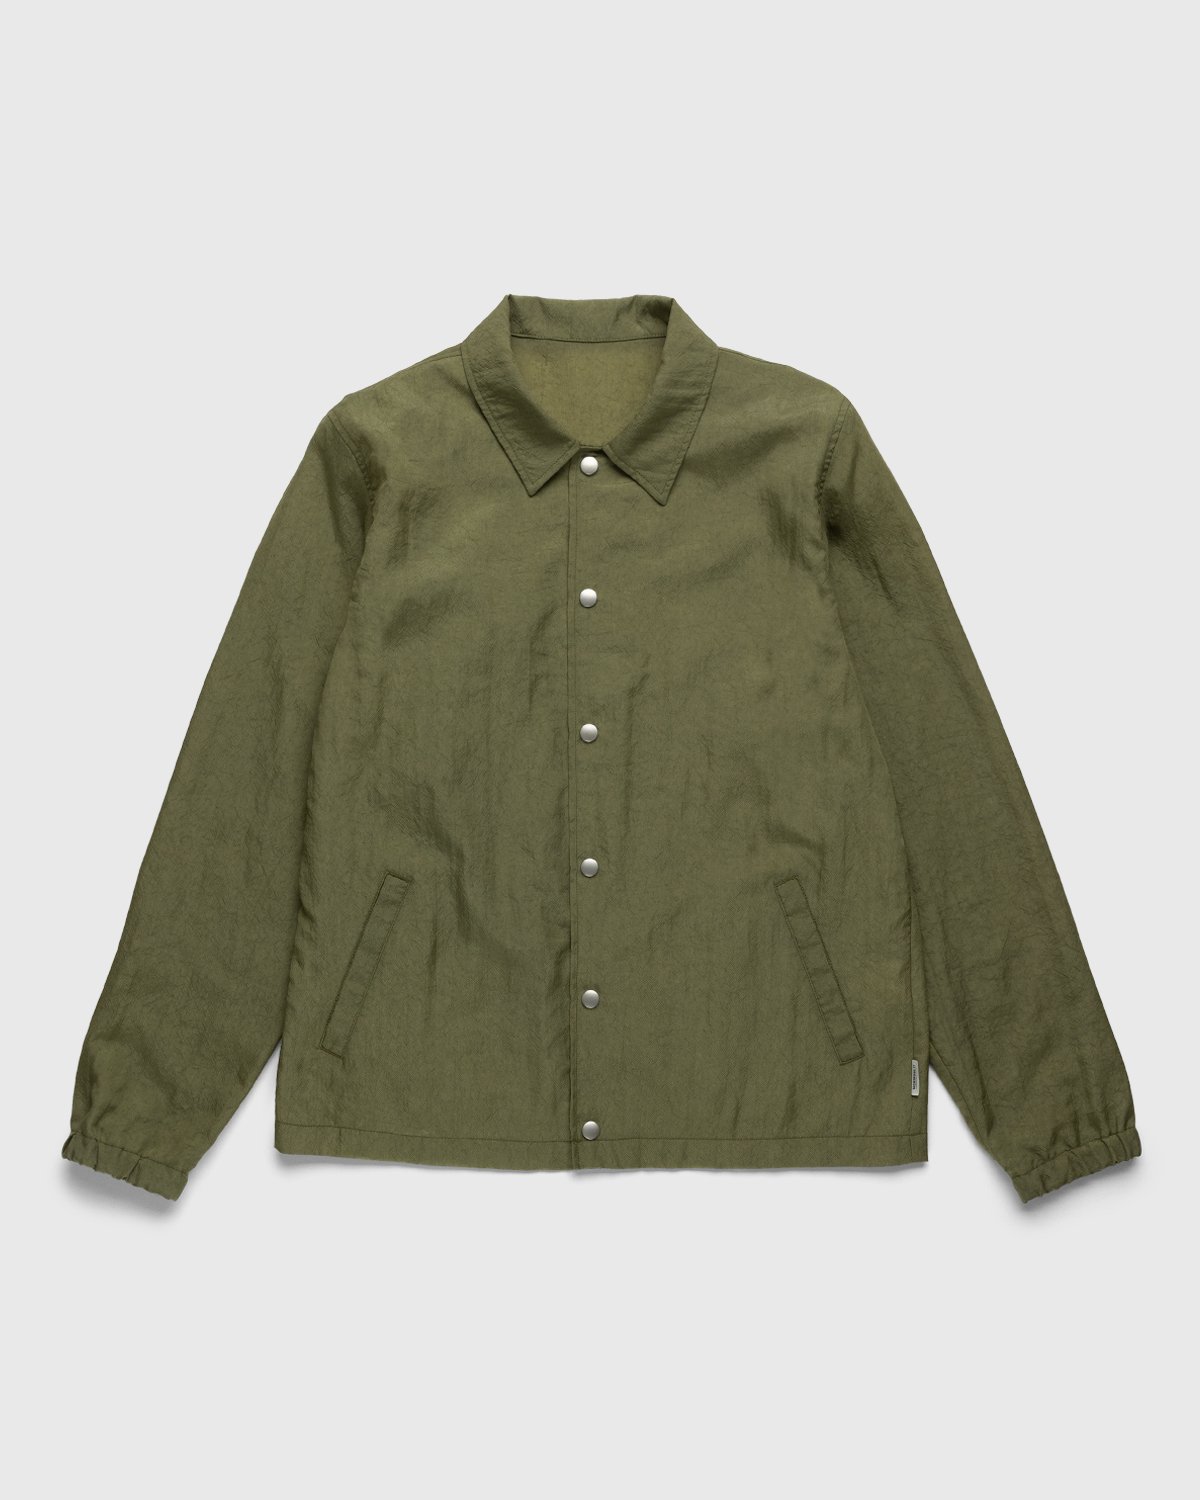 Highsnobiety - Stonewashed Nylon Coach Jacket Olive - Clothing - Green - Image 1